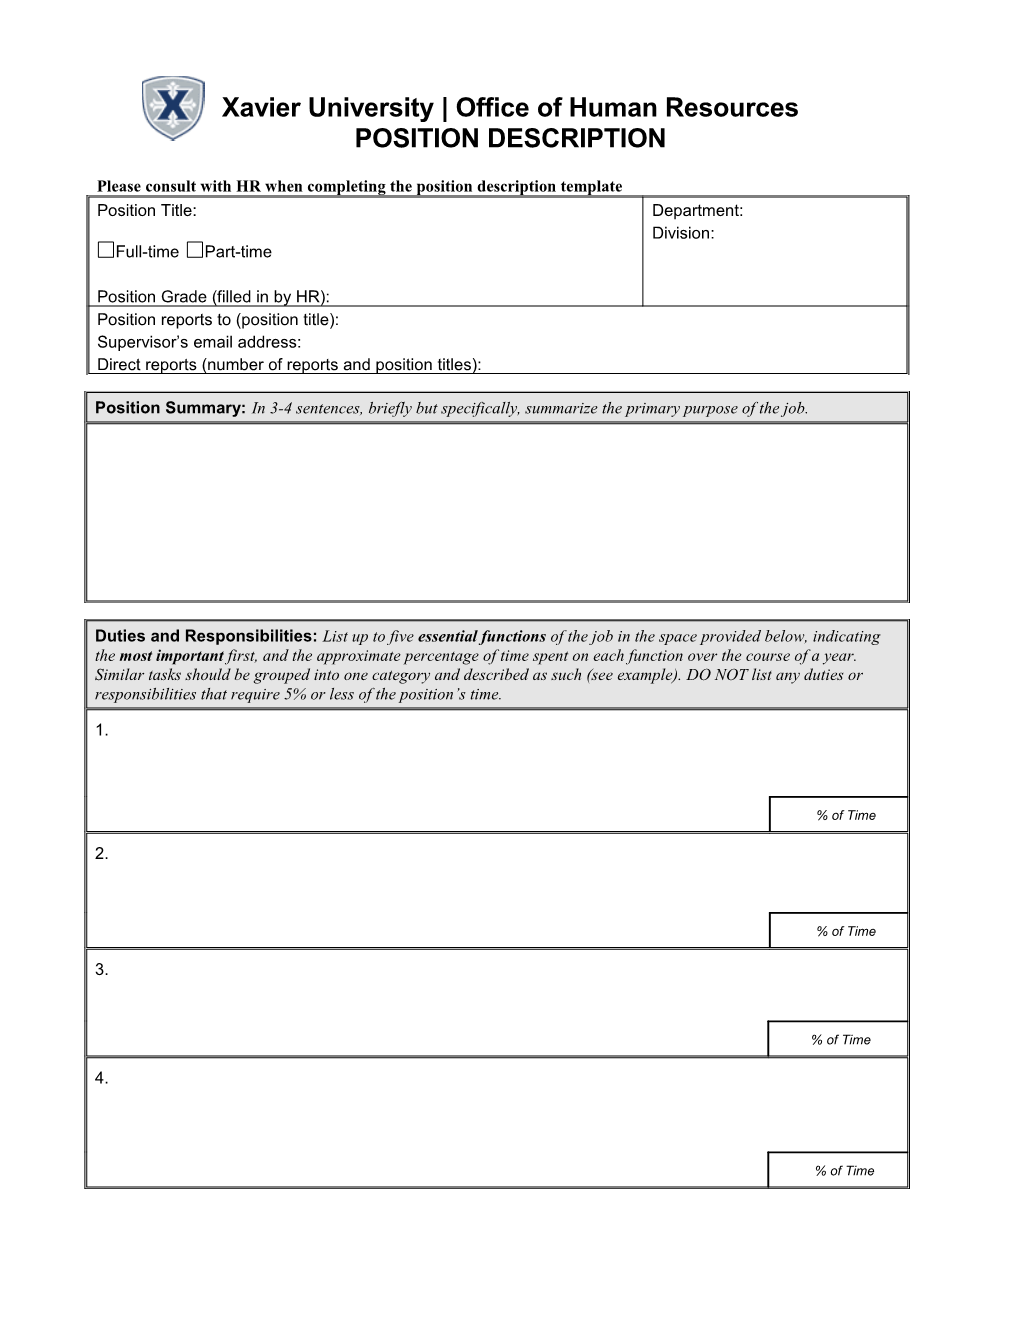 Position Description Questionnaire (Example For FHI)